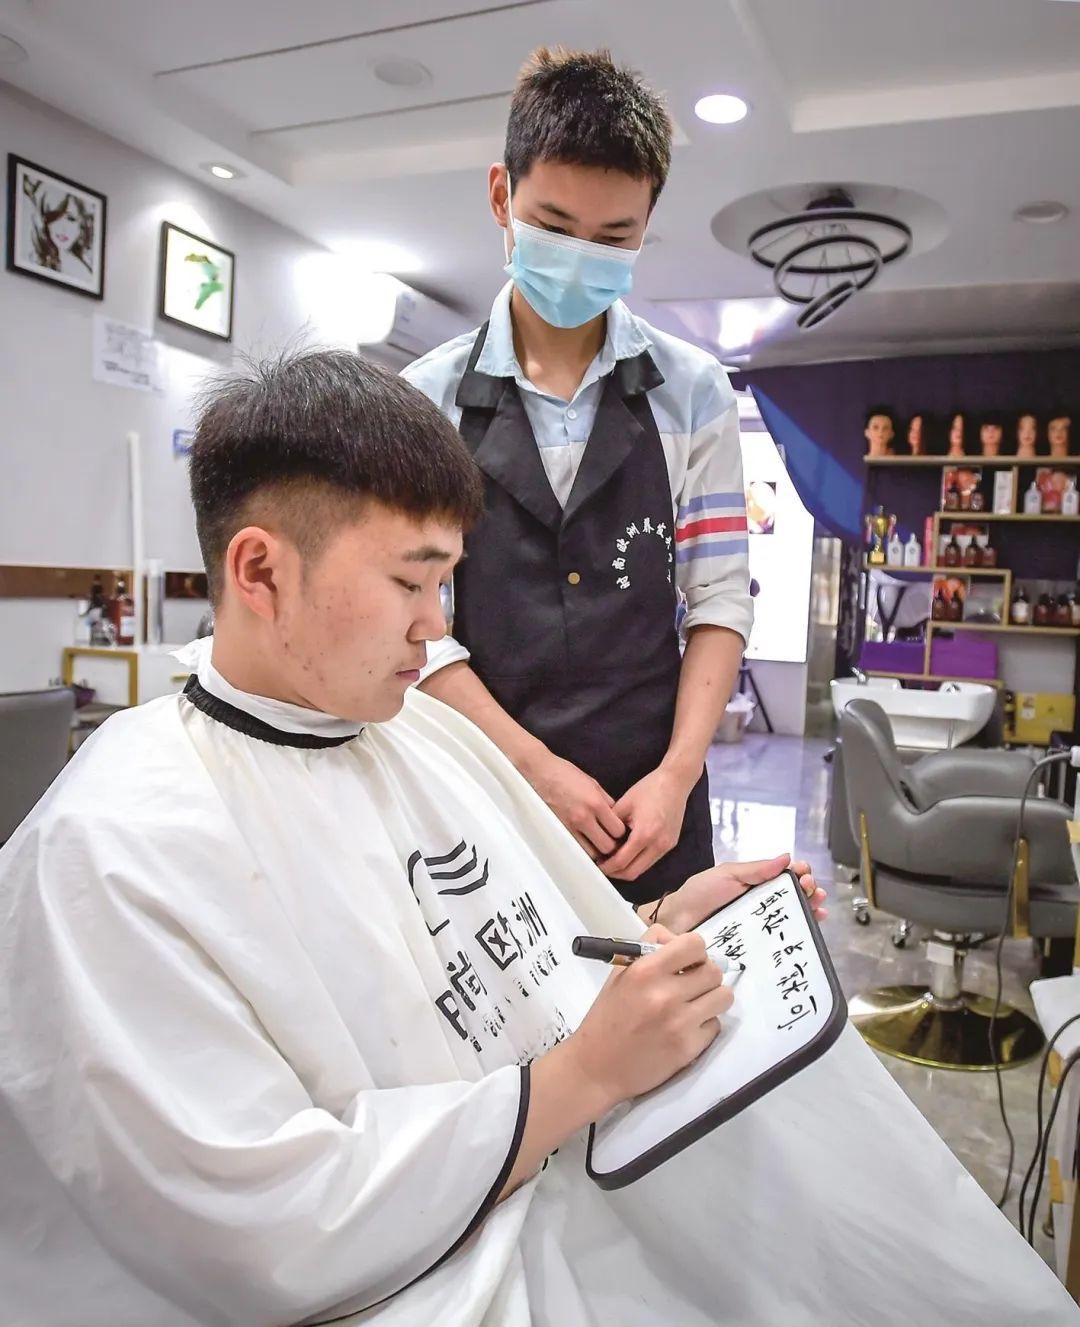 阅马场附近的一家理发店,是武汉首家无声理发店,店主和店员都是聋人